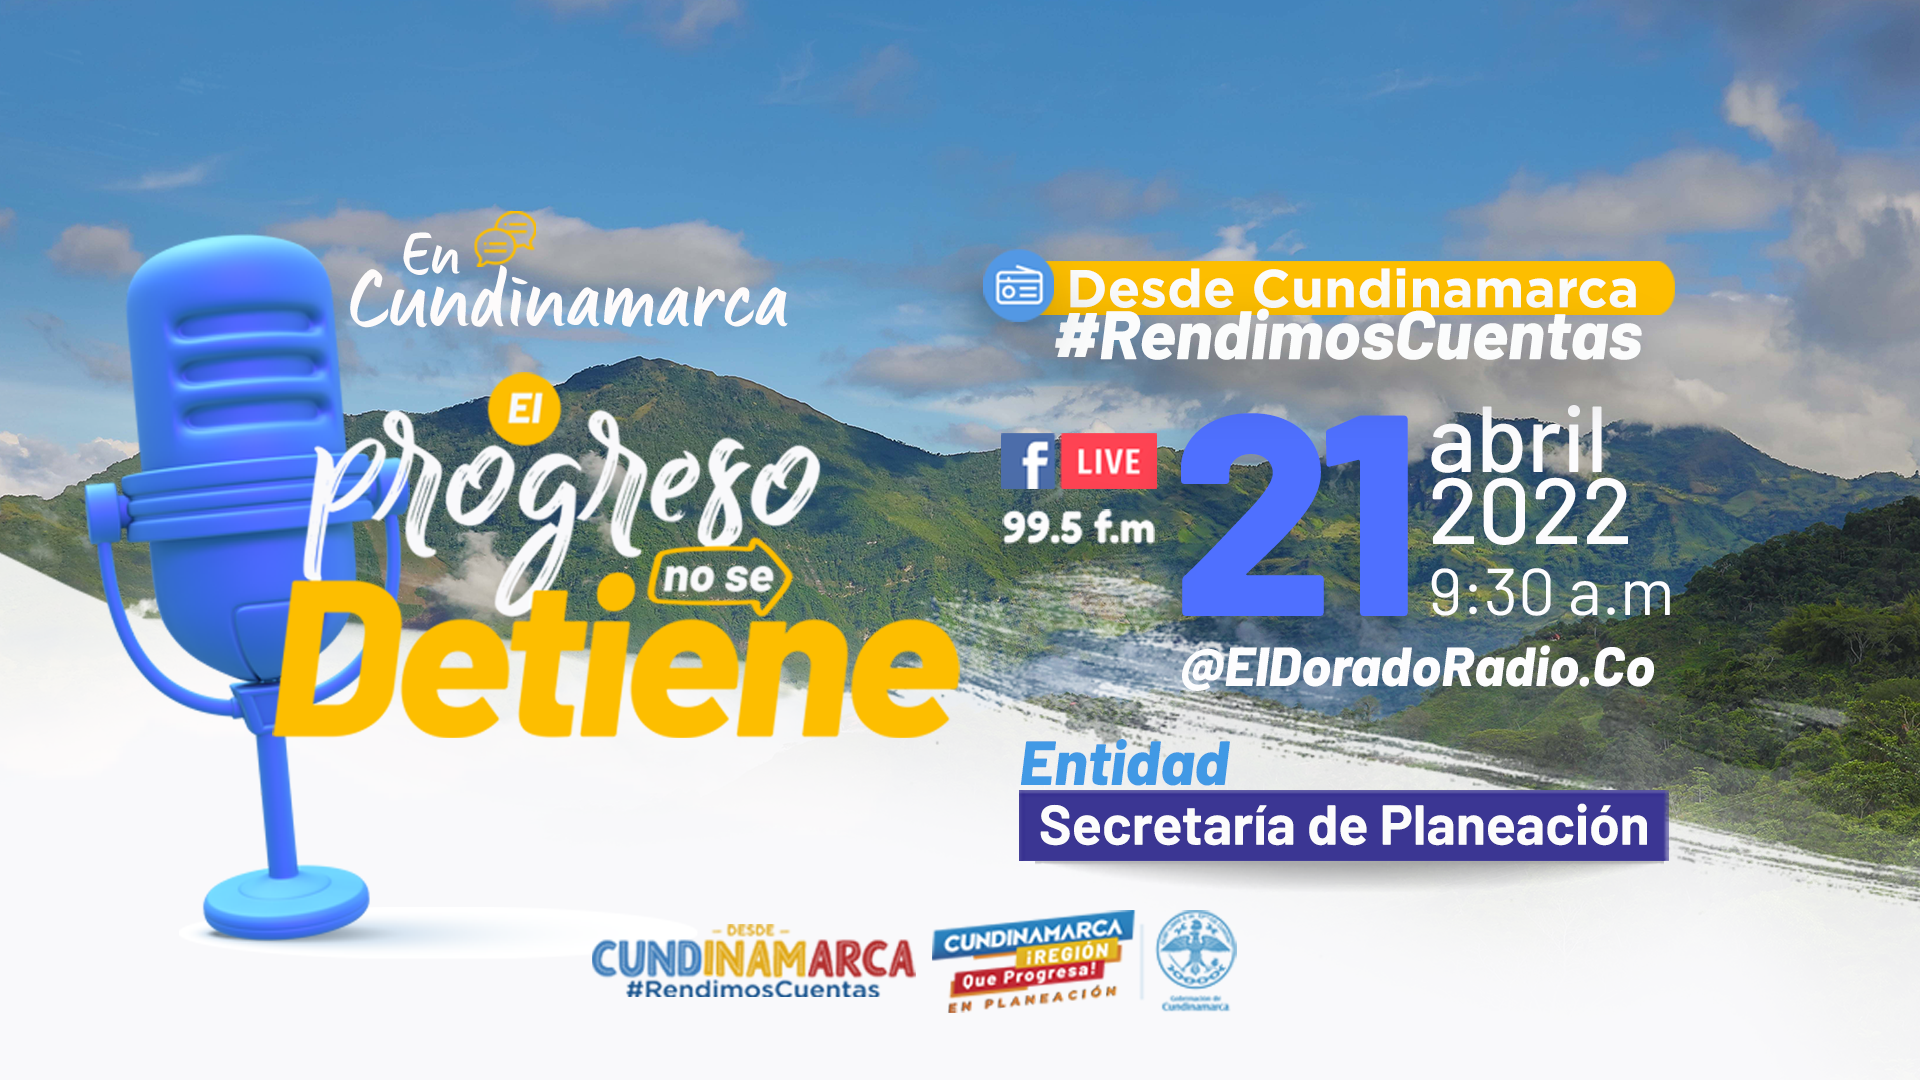 Imagen del video Desde #Cundinamarca #RendimosCuentas: Planeación